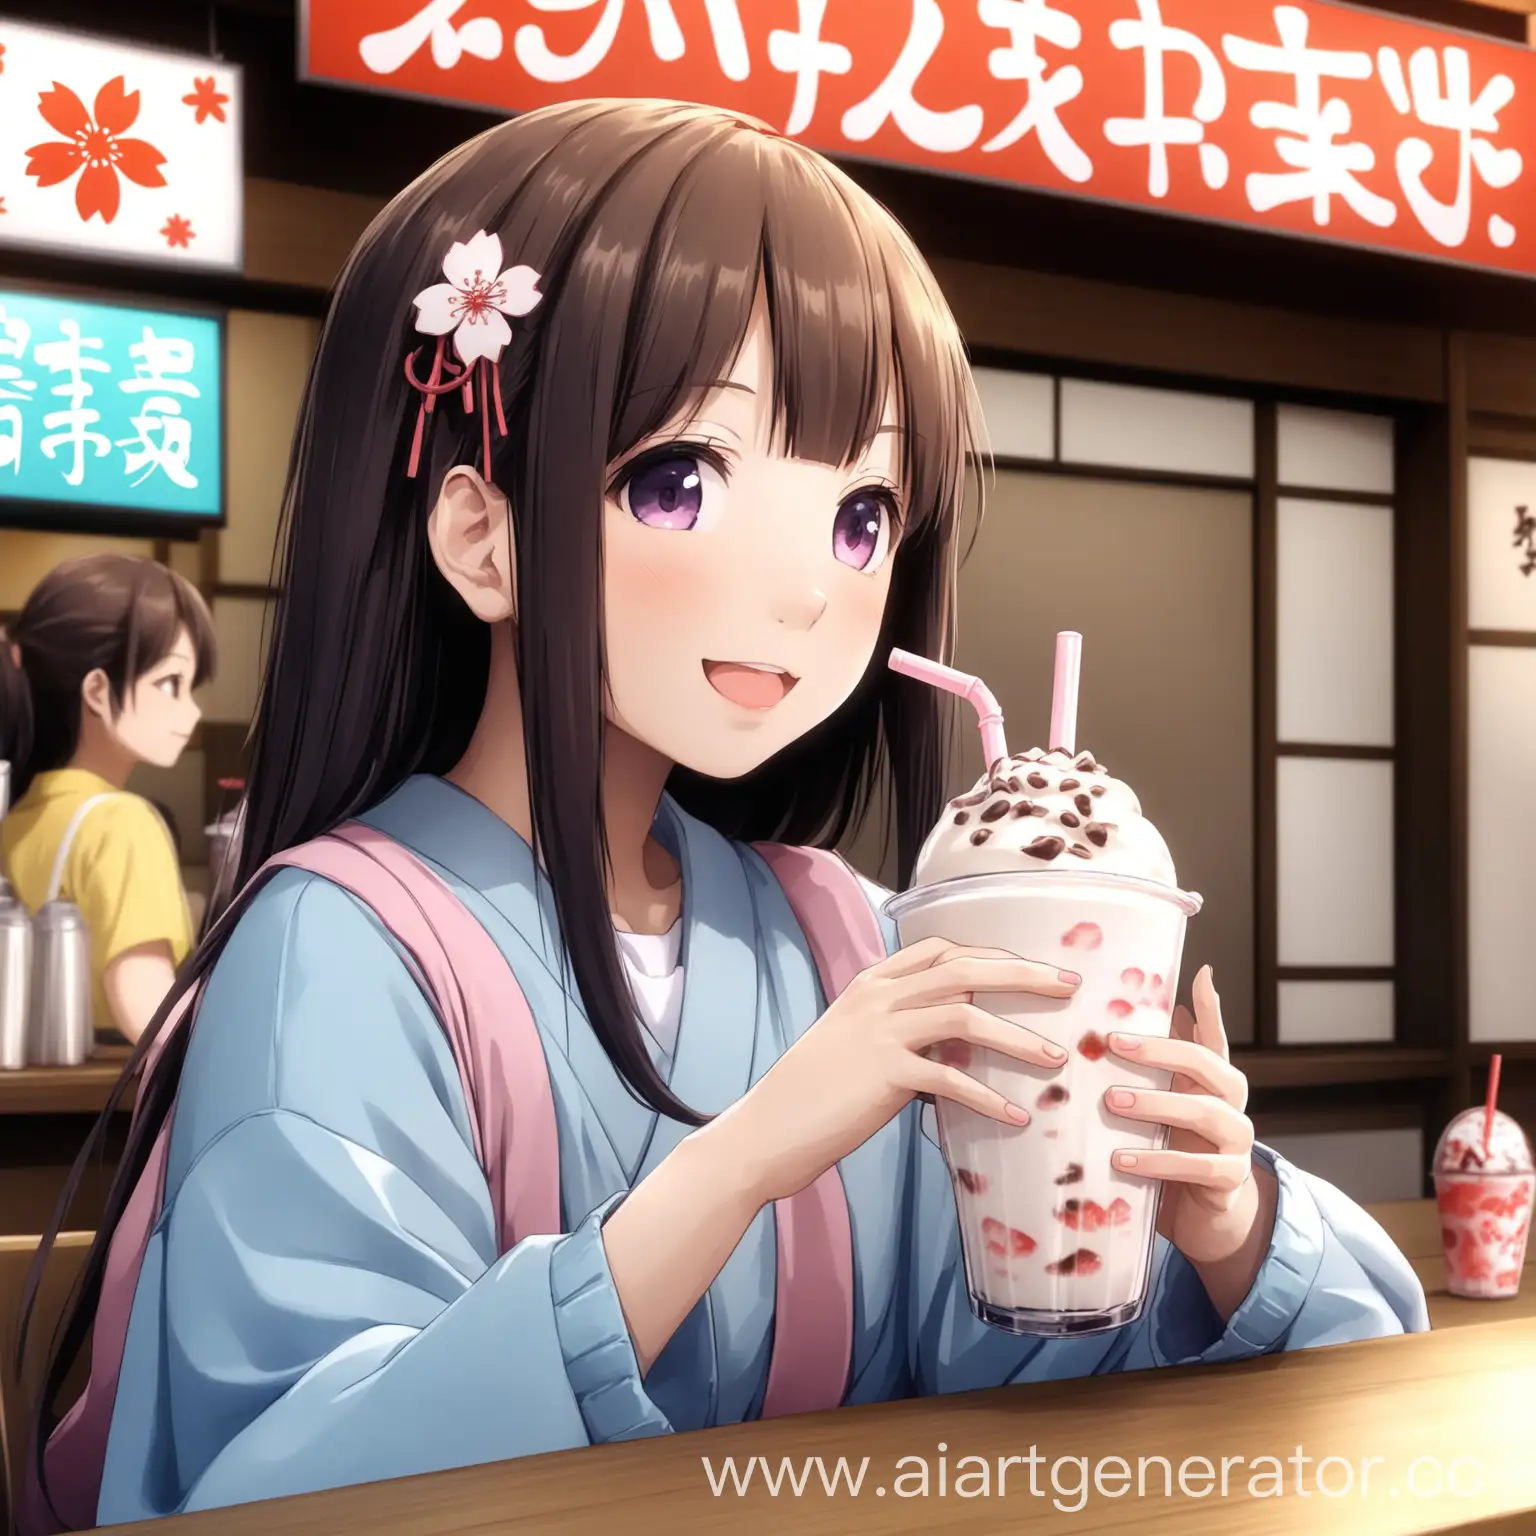 Japanese-Girl-Enjoying-Milkshake-in-Tokyo-Cafe